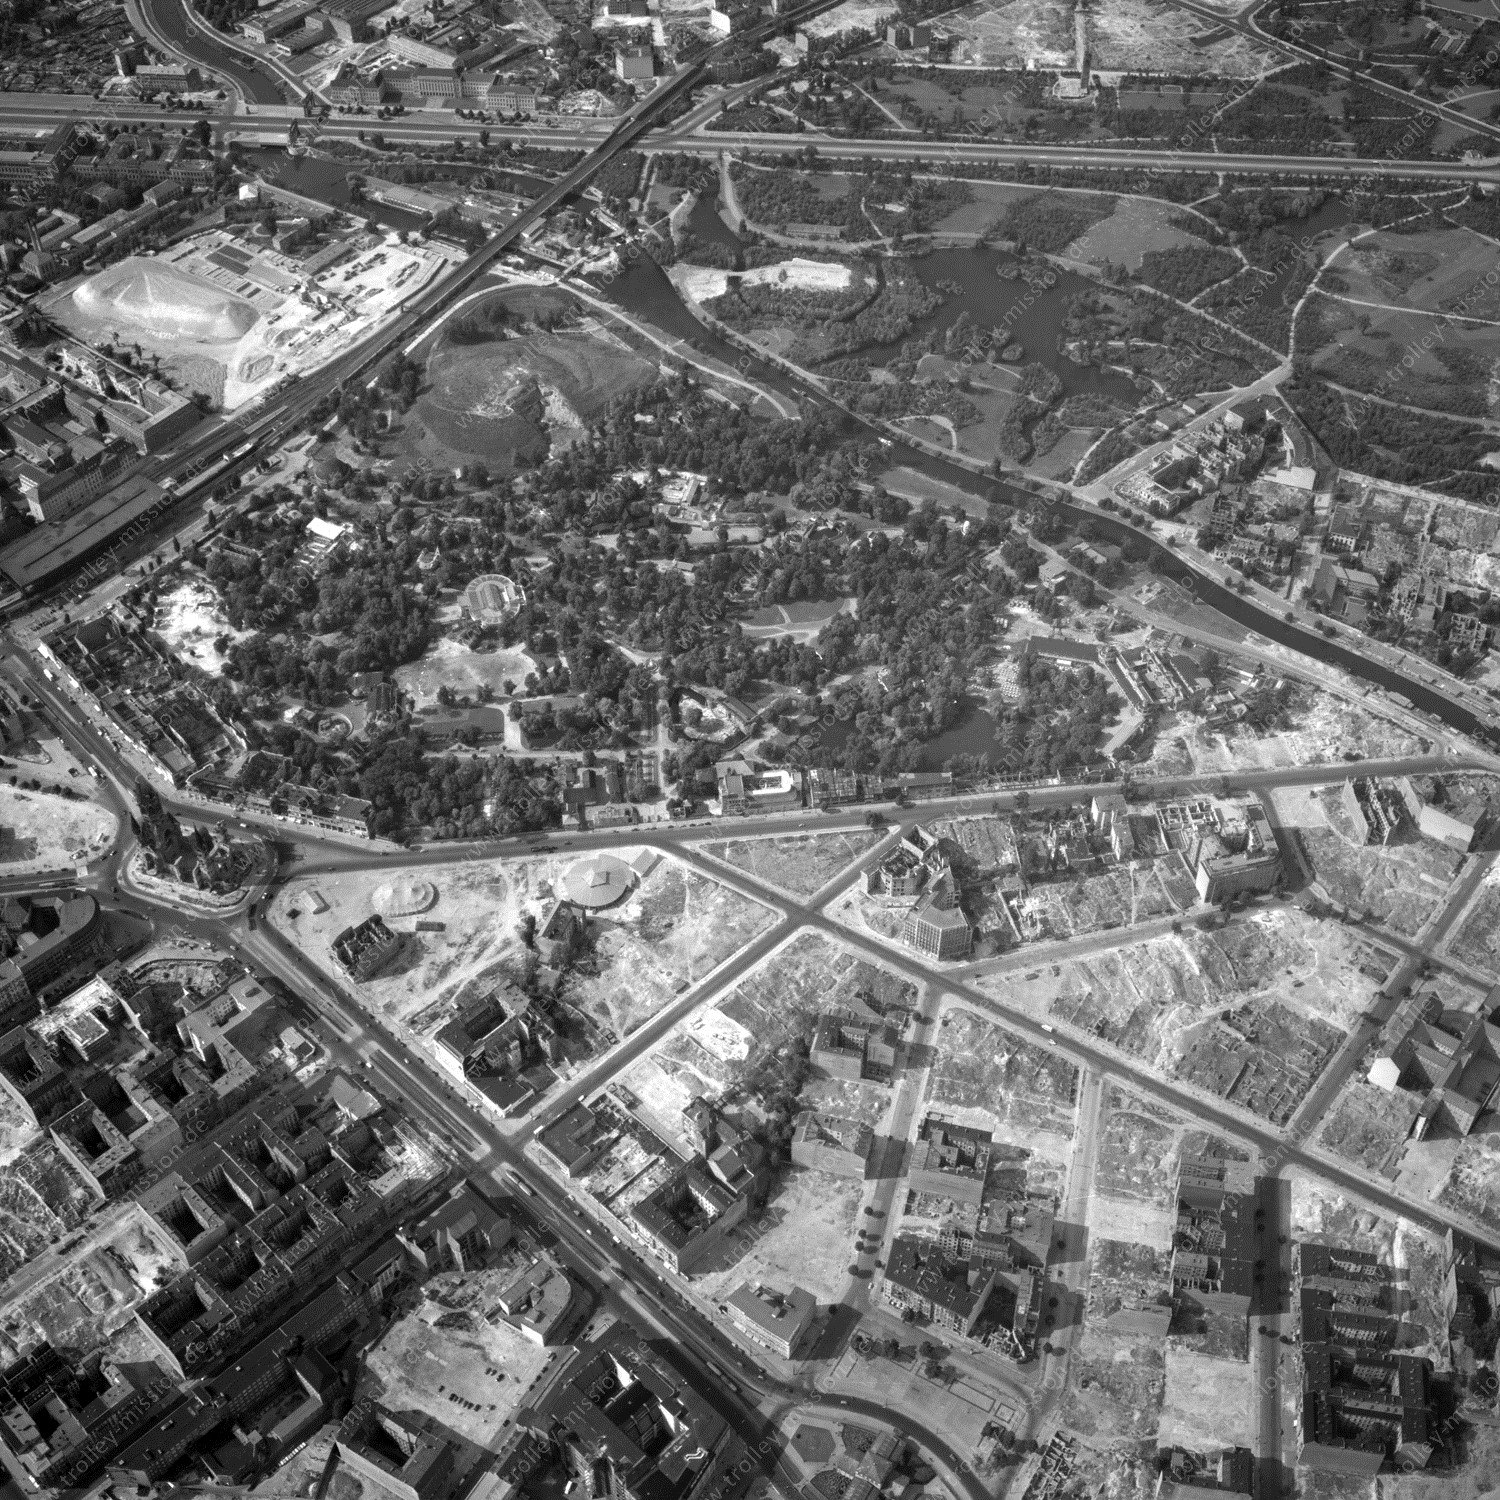 Alte Fotos und Luftbilder von Berlin - Luftbildaufnahme Nr. 04 - Historische Luftaufnahmen von West-Berlin aus dem Jahr 1954 - Flugstrecke Yankee